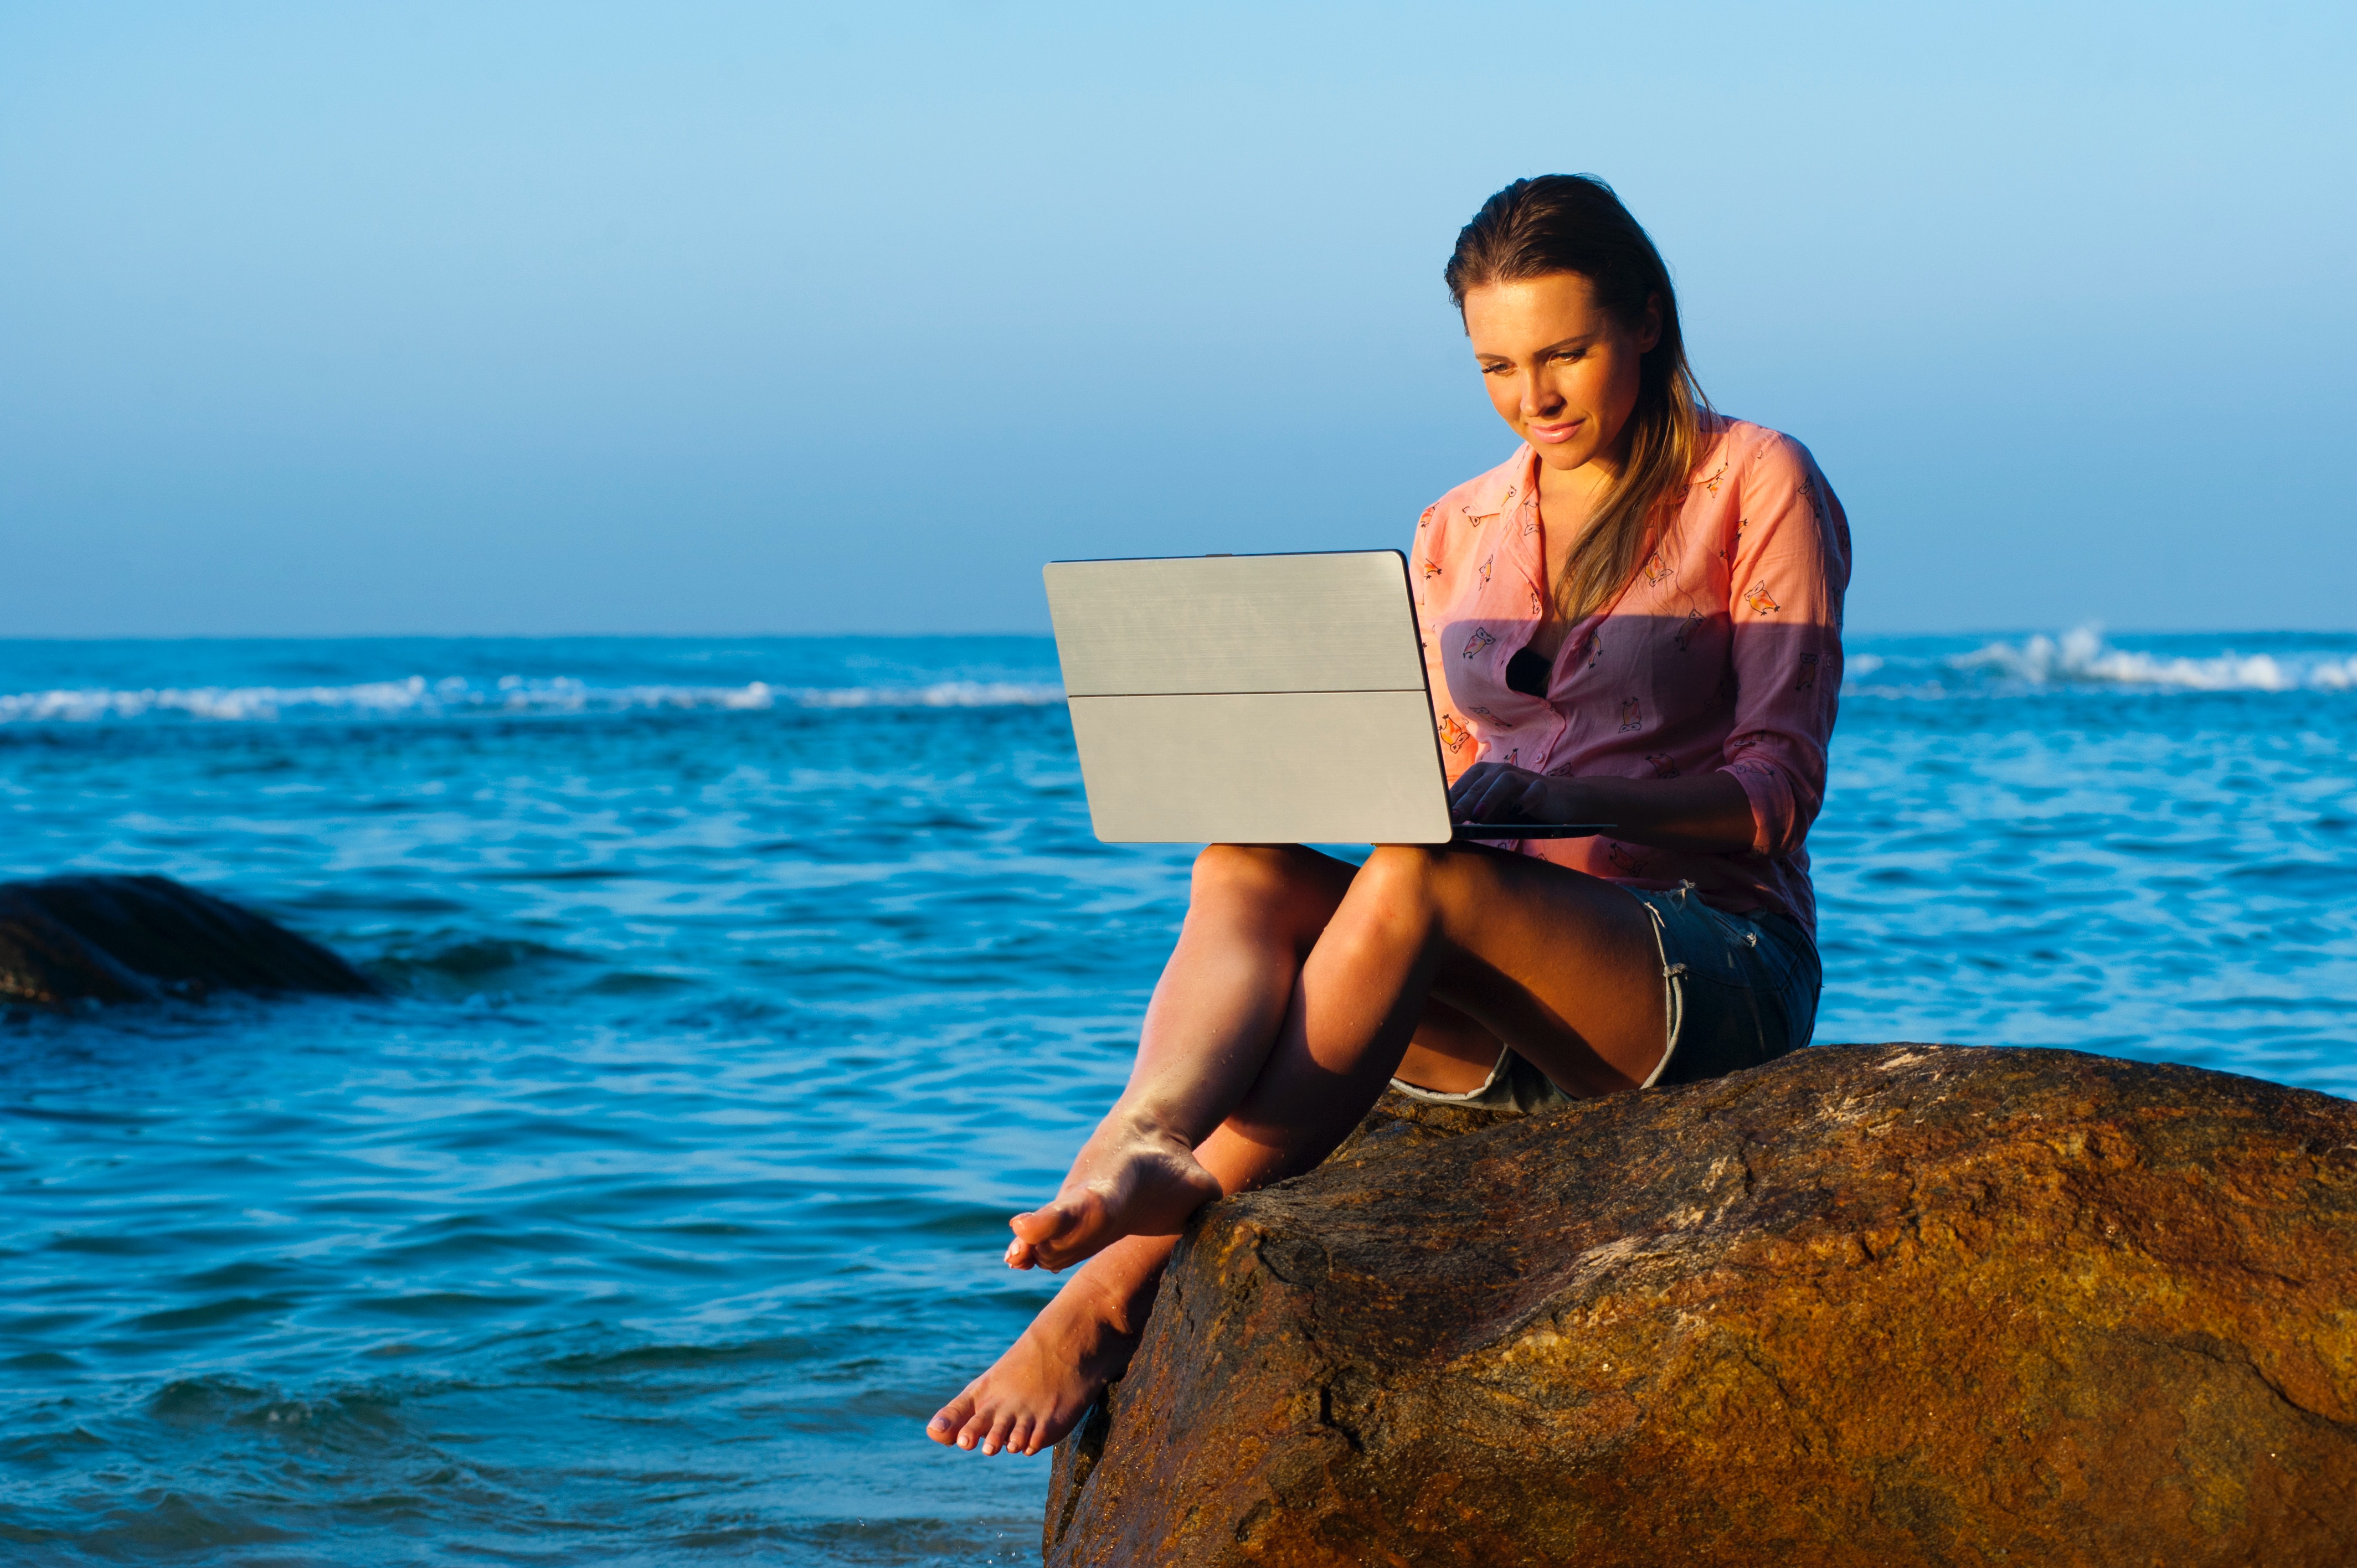 Удаленная работа андроидом. Человек с ноутбуком на море. Женщина с ноутбуком на природе. Девушка с ноутбуком на море. Девушка с ноутбуком на берегу моря.